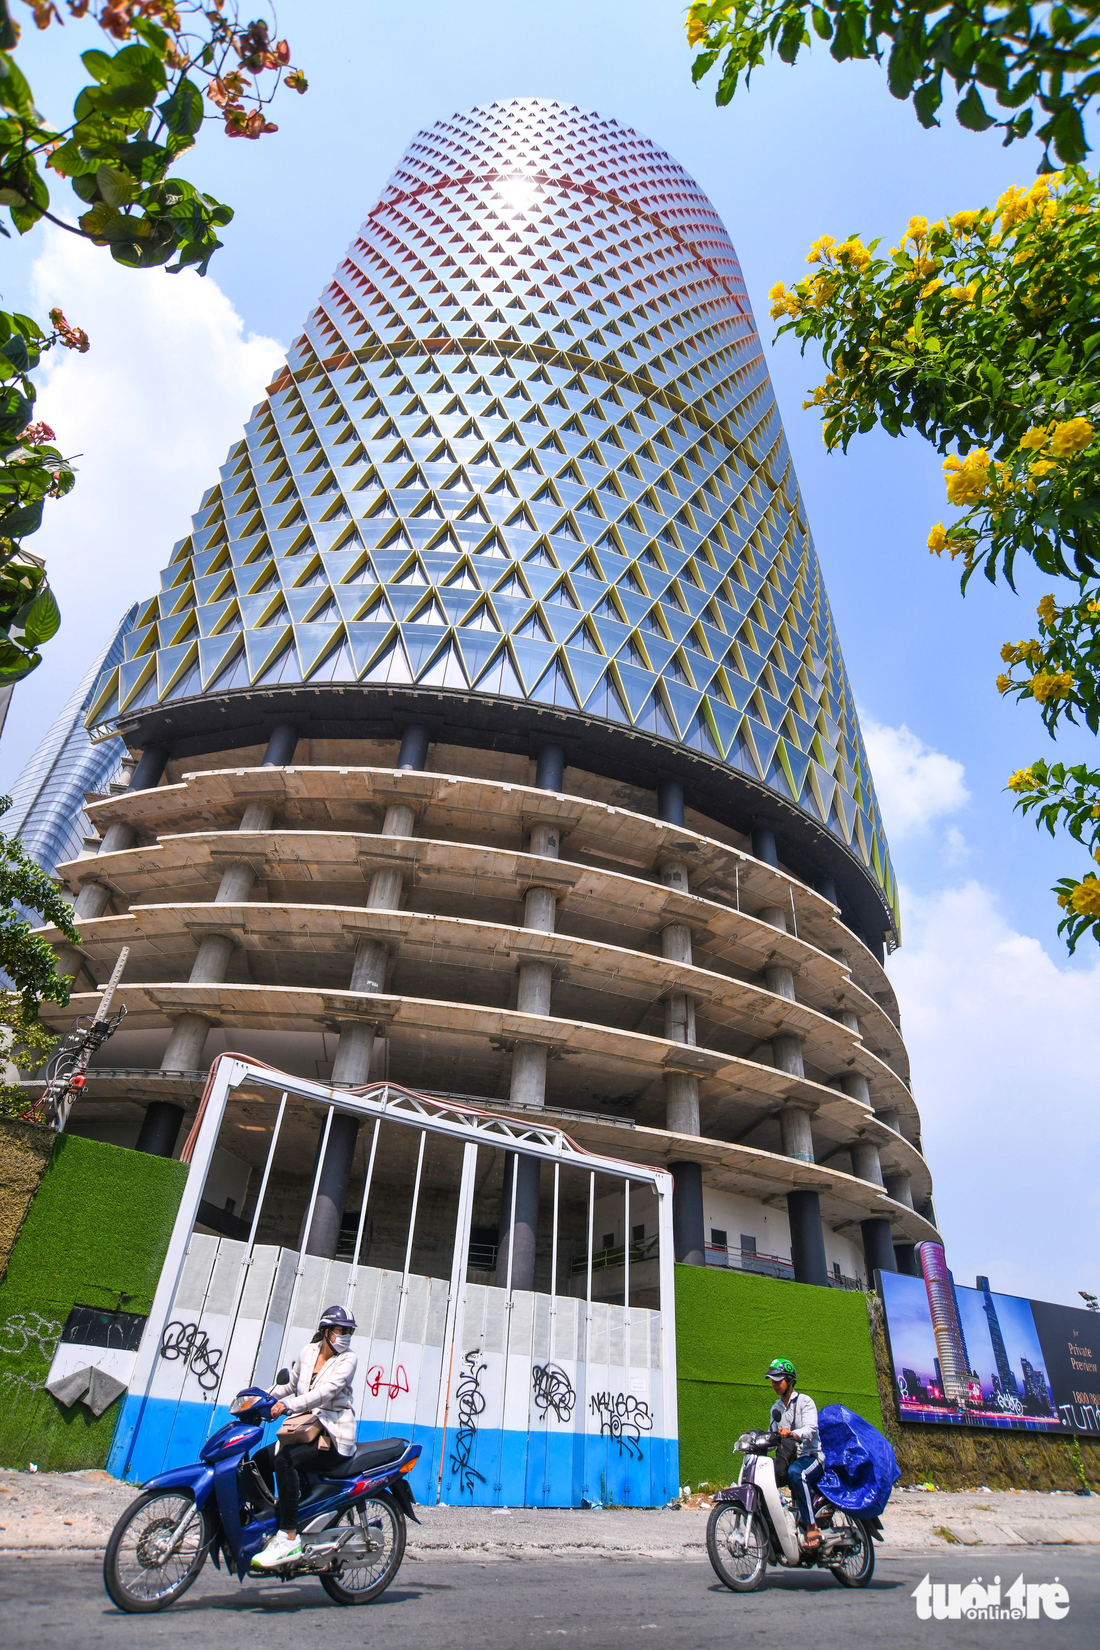 IFC One Saigon (tên ban đầu là Saigon One Tower) được khởi công năm 2009 và dự kiến sẽ hoàn thành vào năm 2011, với tổng vốn đầu tư khoảng 5.000 tỉ thời điểm đó. Khi công trình hoàn thiện khoảng 80%, dự án bị ngưng thi công suốt nhiều năm và kỳ vọng hồi sinh sau khi Viva Land làm chủ đầu tư. Nhưng đến nay Viva Land biến mất, chủ tịch Vạn Thịnh Phát vướng vào vòng lao lý khiến dự án lần nữa long đong - Ảnh: QUANG ĐỊNH